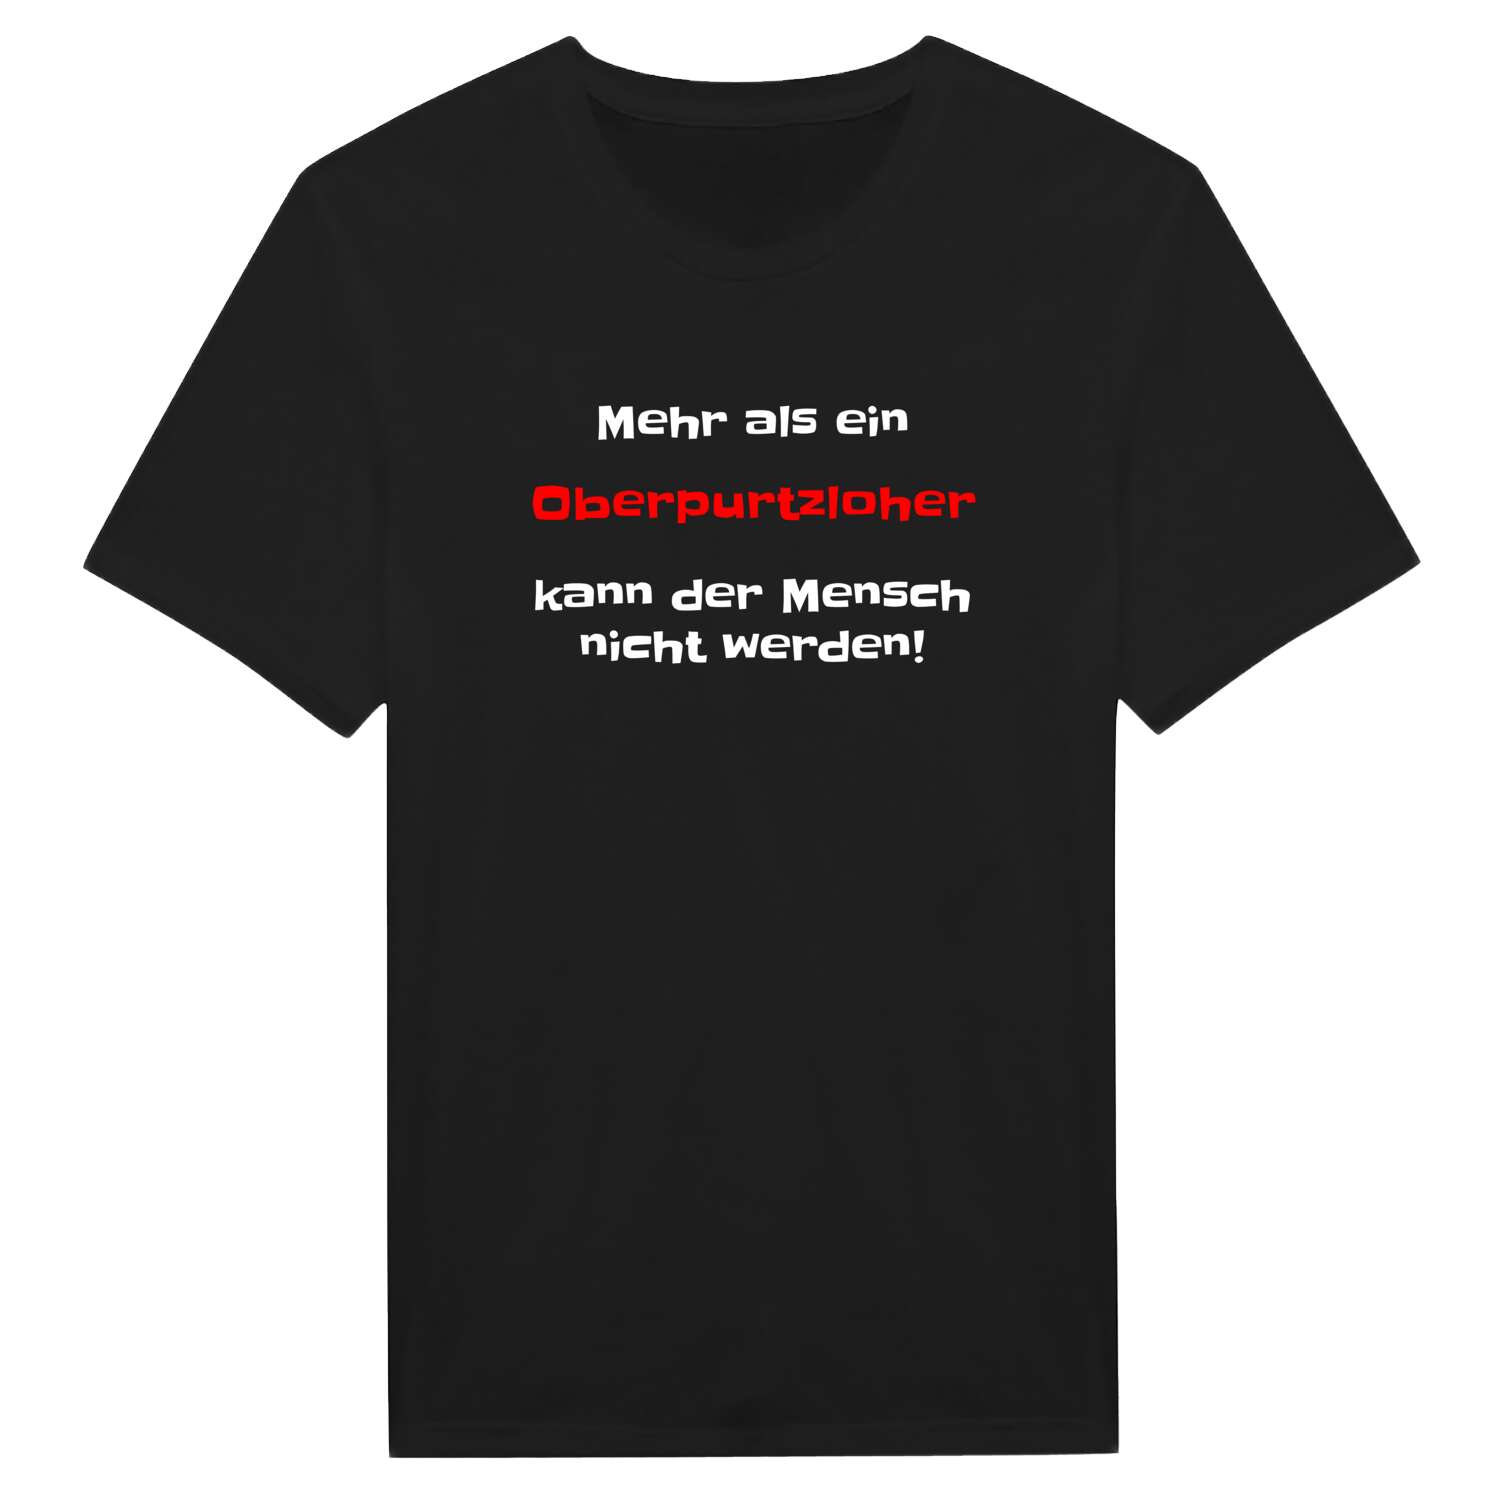 Oberpurtzloh T-Shirt »Mehr als ein«